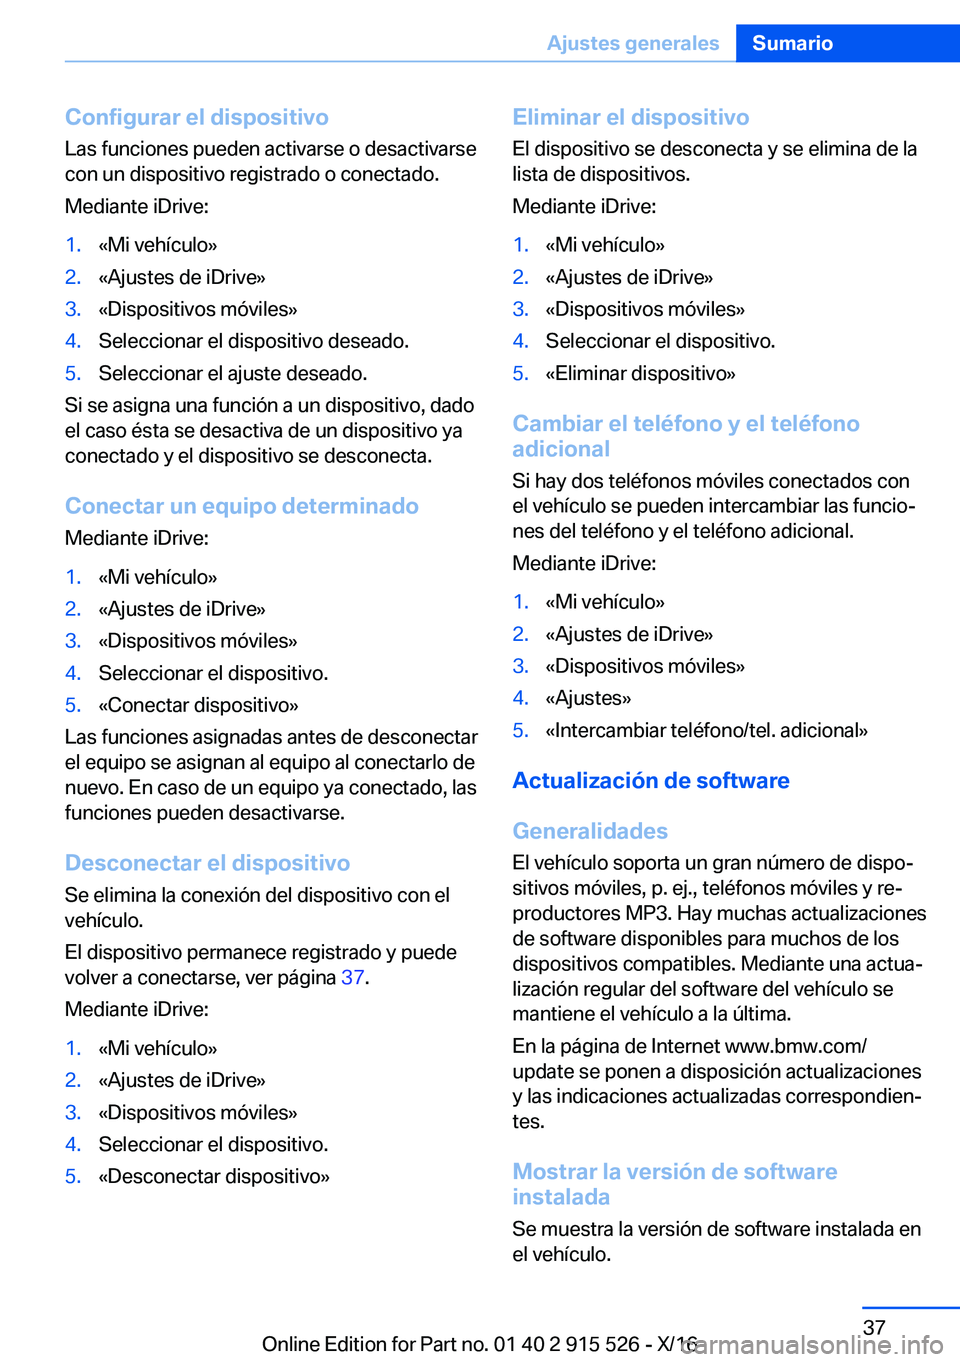 BMW X5 2017  Manuales de Empleo (in Spanish) �C�o�n�f�i�g�u�r�a�r��e�l��d�i�s�p�o�s�i�t�i�v�o
�L�a�s� �f�u�n�c�i�o�n�e�s� �p�u�e�d�e�n� �a�c�t�i�v�a�r�s�e� �o� �d�e�s�a�c�t�i�v�a�r�s�e
�c�o�n� �u�n� �d�i�s�p�o�s�i�t�i�v�o� �r�e�g�i�s�t�r�a�d�o